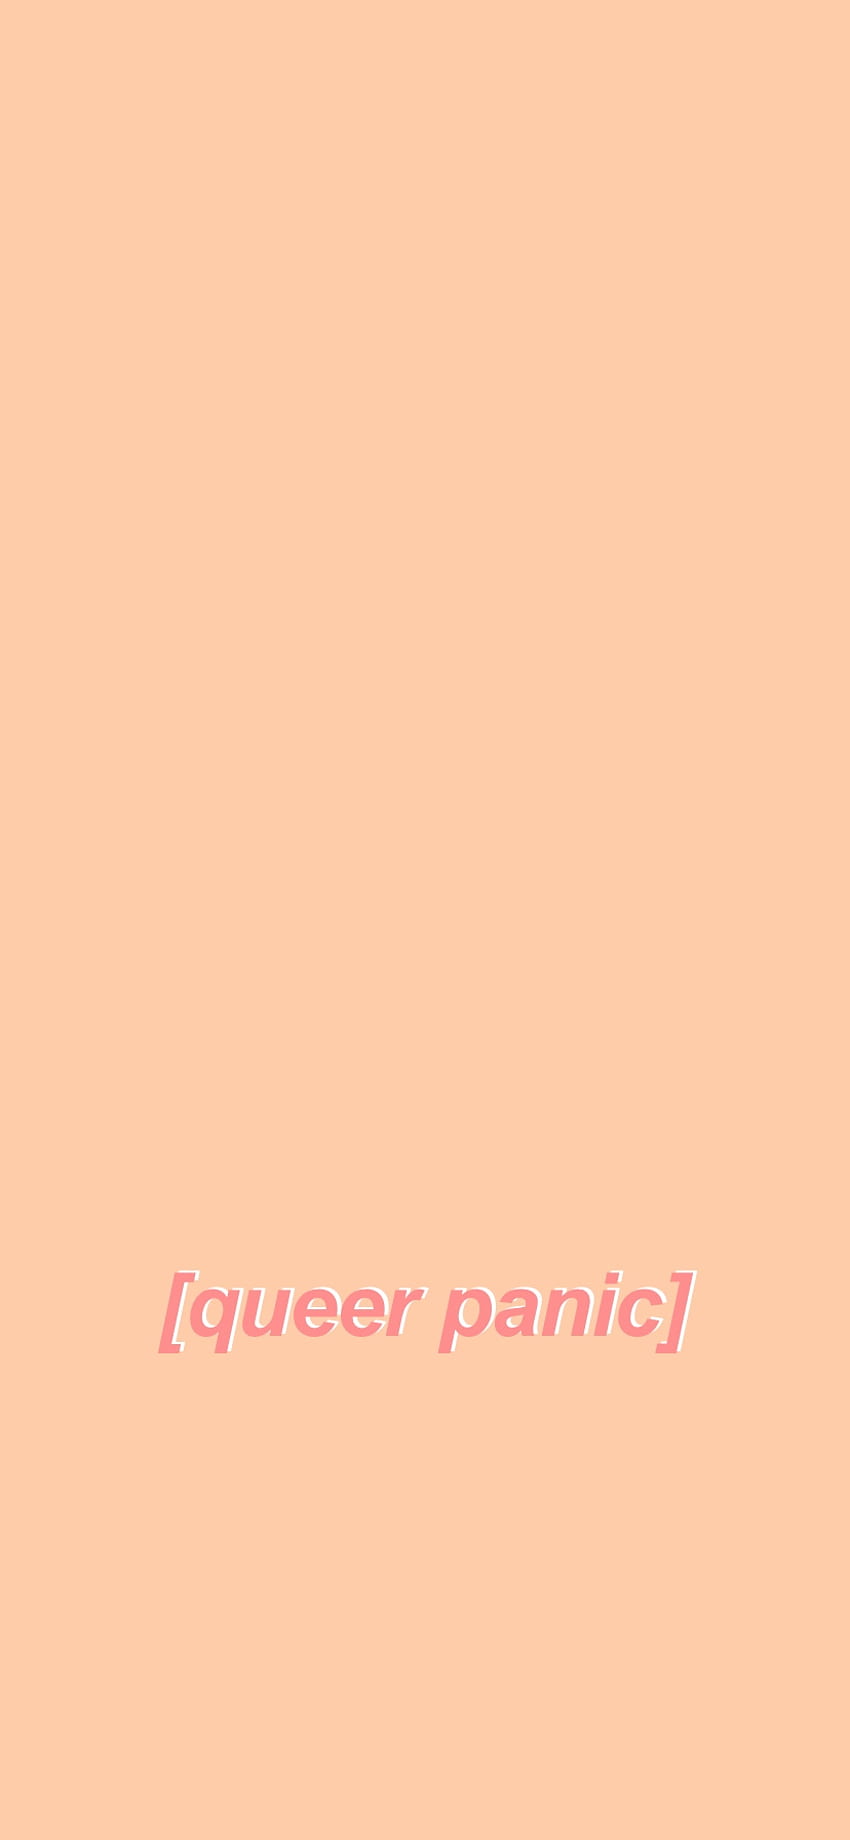 pánico queer, gay, lgbt fondo de pantalla del teléfono